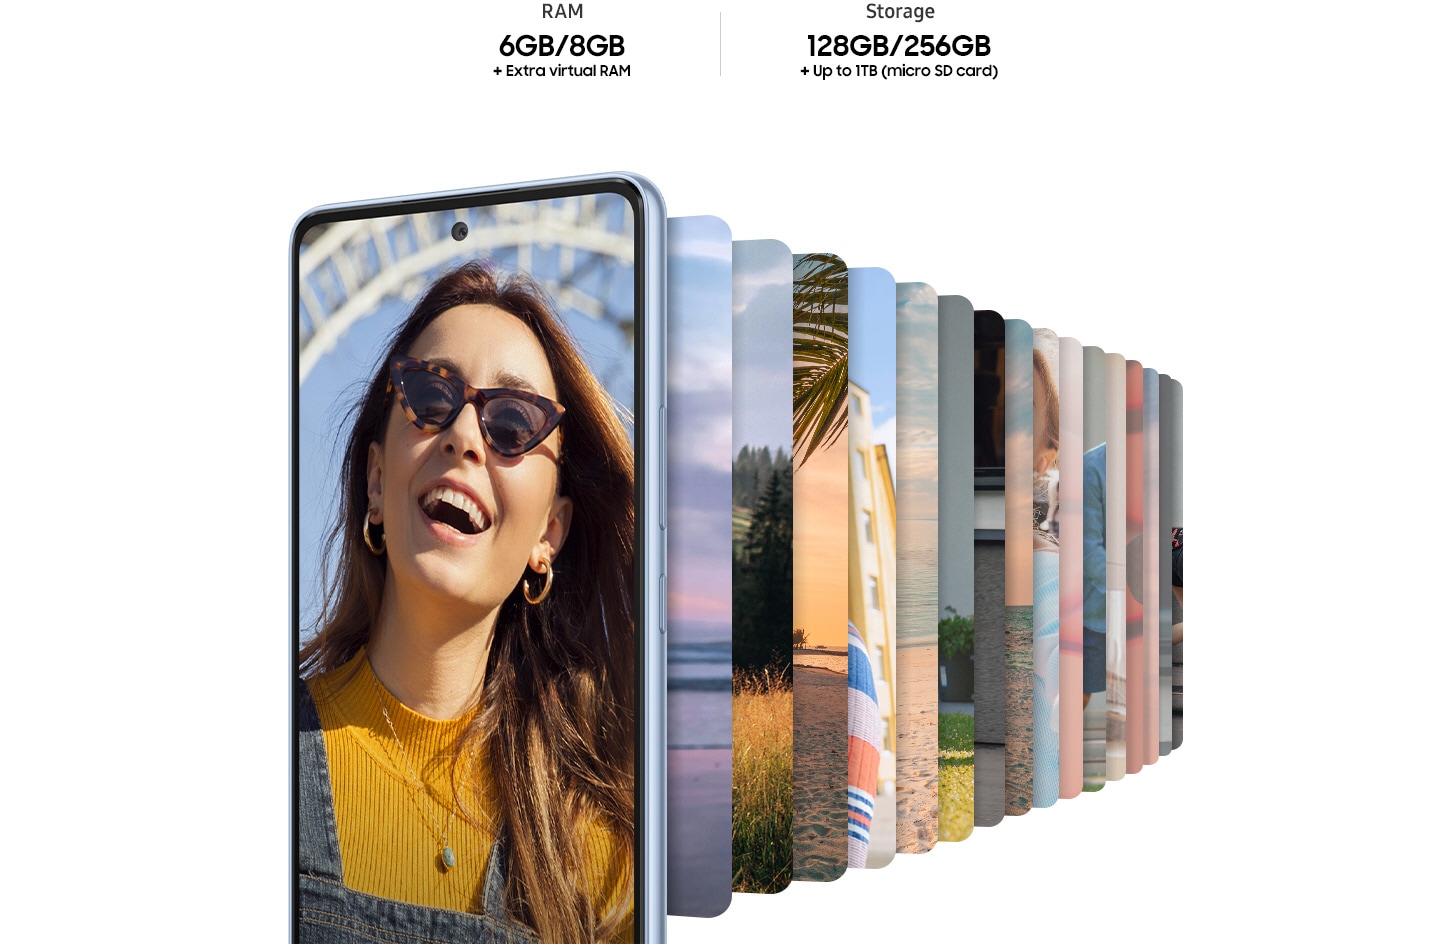 Galaxy A53 5G visto desde el frente, que muestra una imagen de una mujer con gafas de sol sonriendo. Detrás del smartphone inteligente hay numerosas imágenes en forma de smartphone inteligente, alineadas y mostrando varios entornos de paisaje. El texto se lee RAM  6G/8 GB + RAM virtual extra y almacenamiento 128/256 GB +Hasta 1 TB (tarjeta Micro SD).